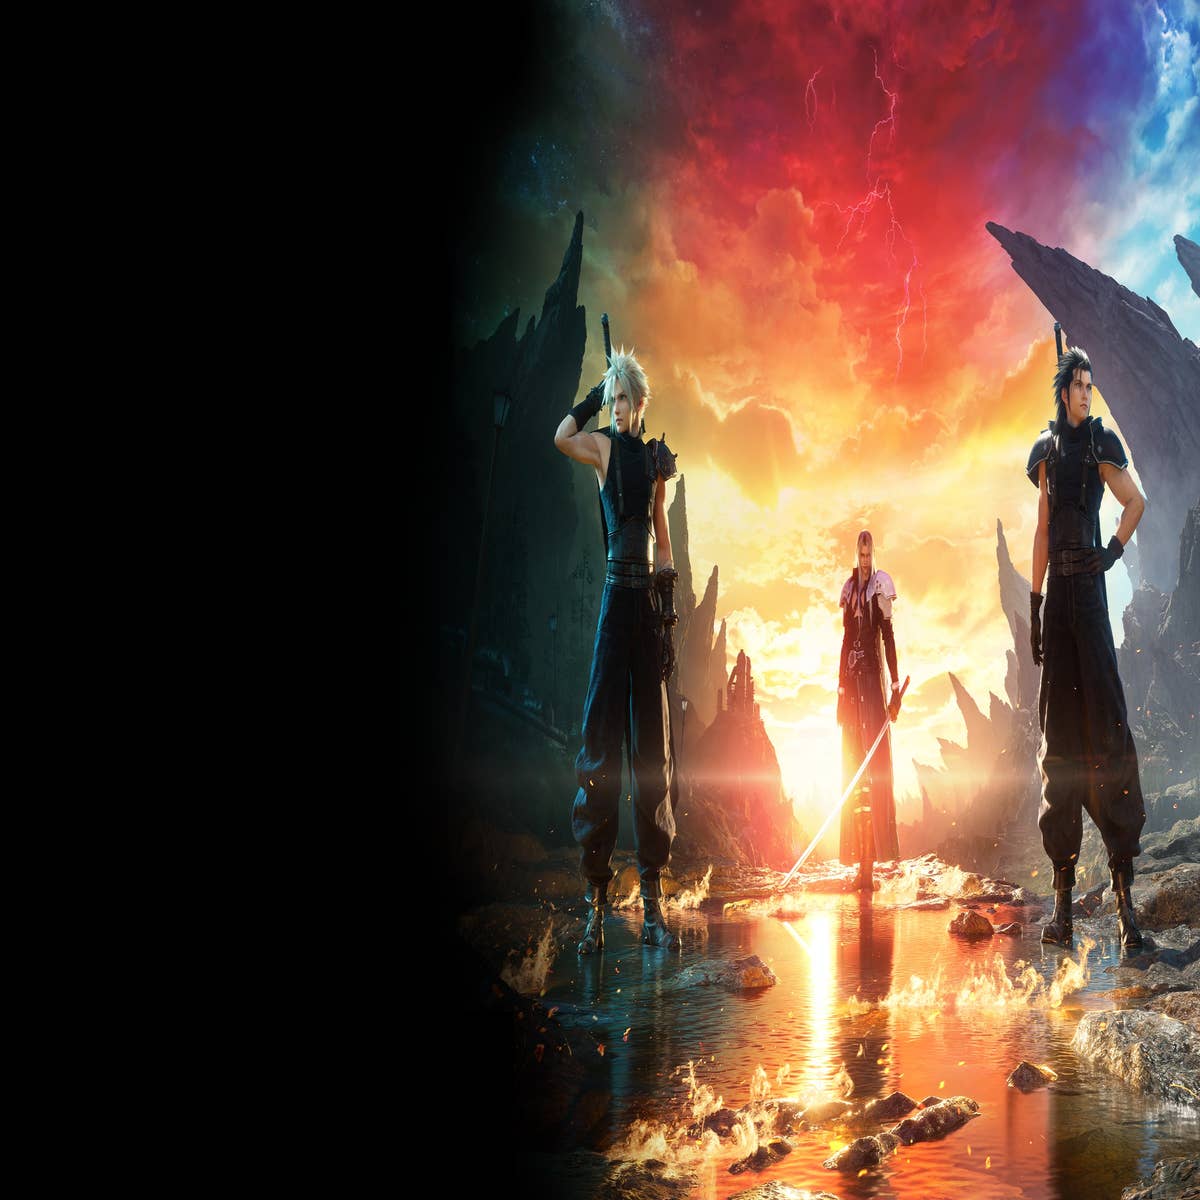 Final Fantasy VII: Rebirth Gameplay Trailer